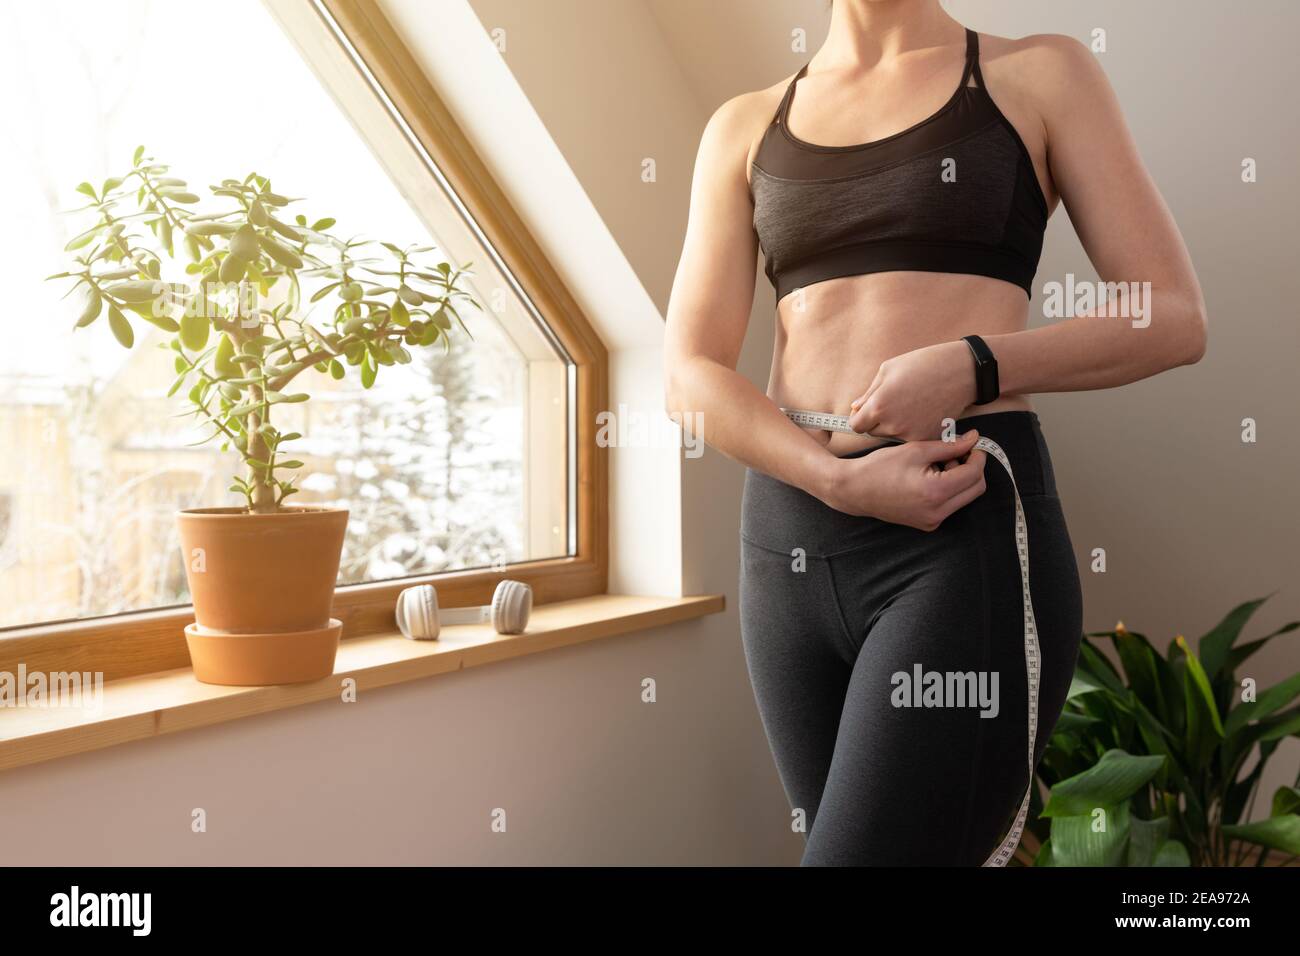 Junge schöne Frau Messung Taille mit Band durch ein Fenster im Dachboden an sonnigen Tag. Gesundes Wohnen und Training zu Hause. Stockfoto